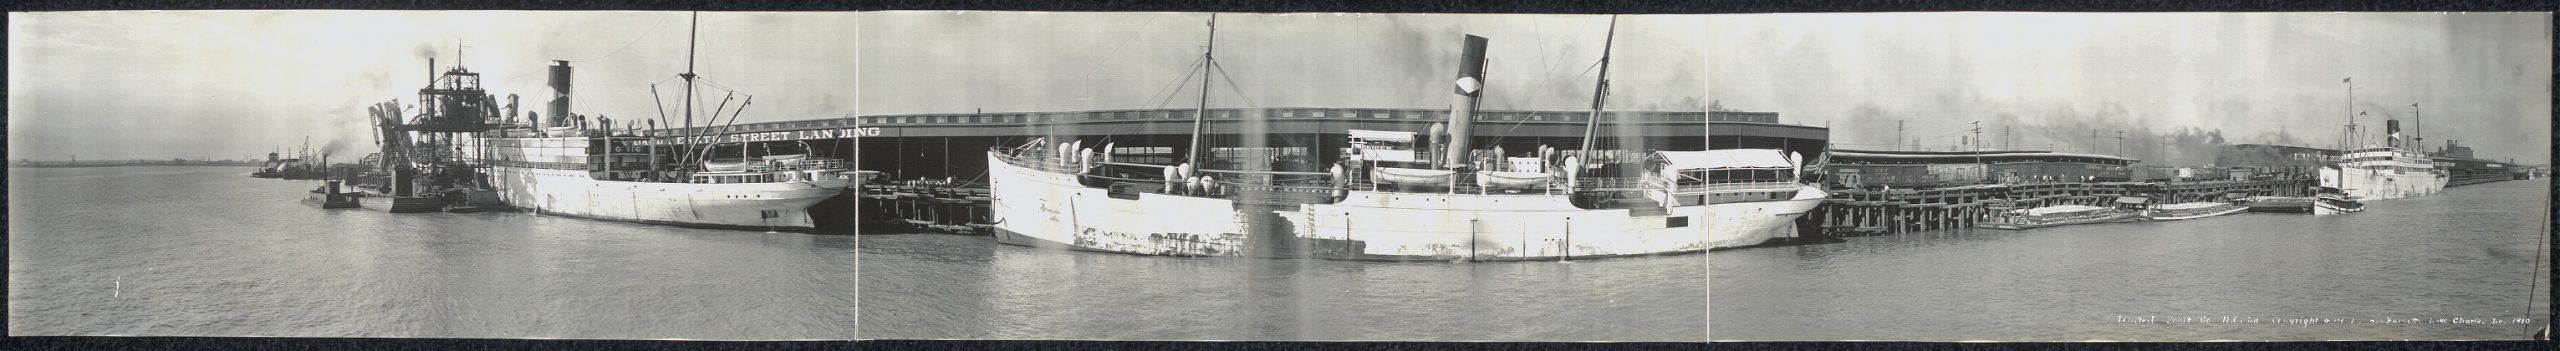 צילום פנורמי של ספינות משא של חברת הפירות הלאומית של סם זמוריי, ניו אורלינס, 1910 (צילום: א. ל. ברנט, ספריית הקונגרס האמריקאי, ויקיפדיה)